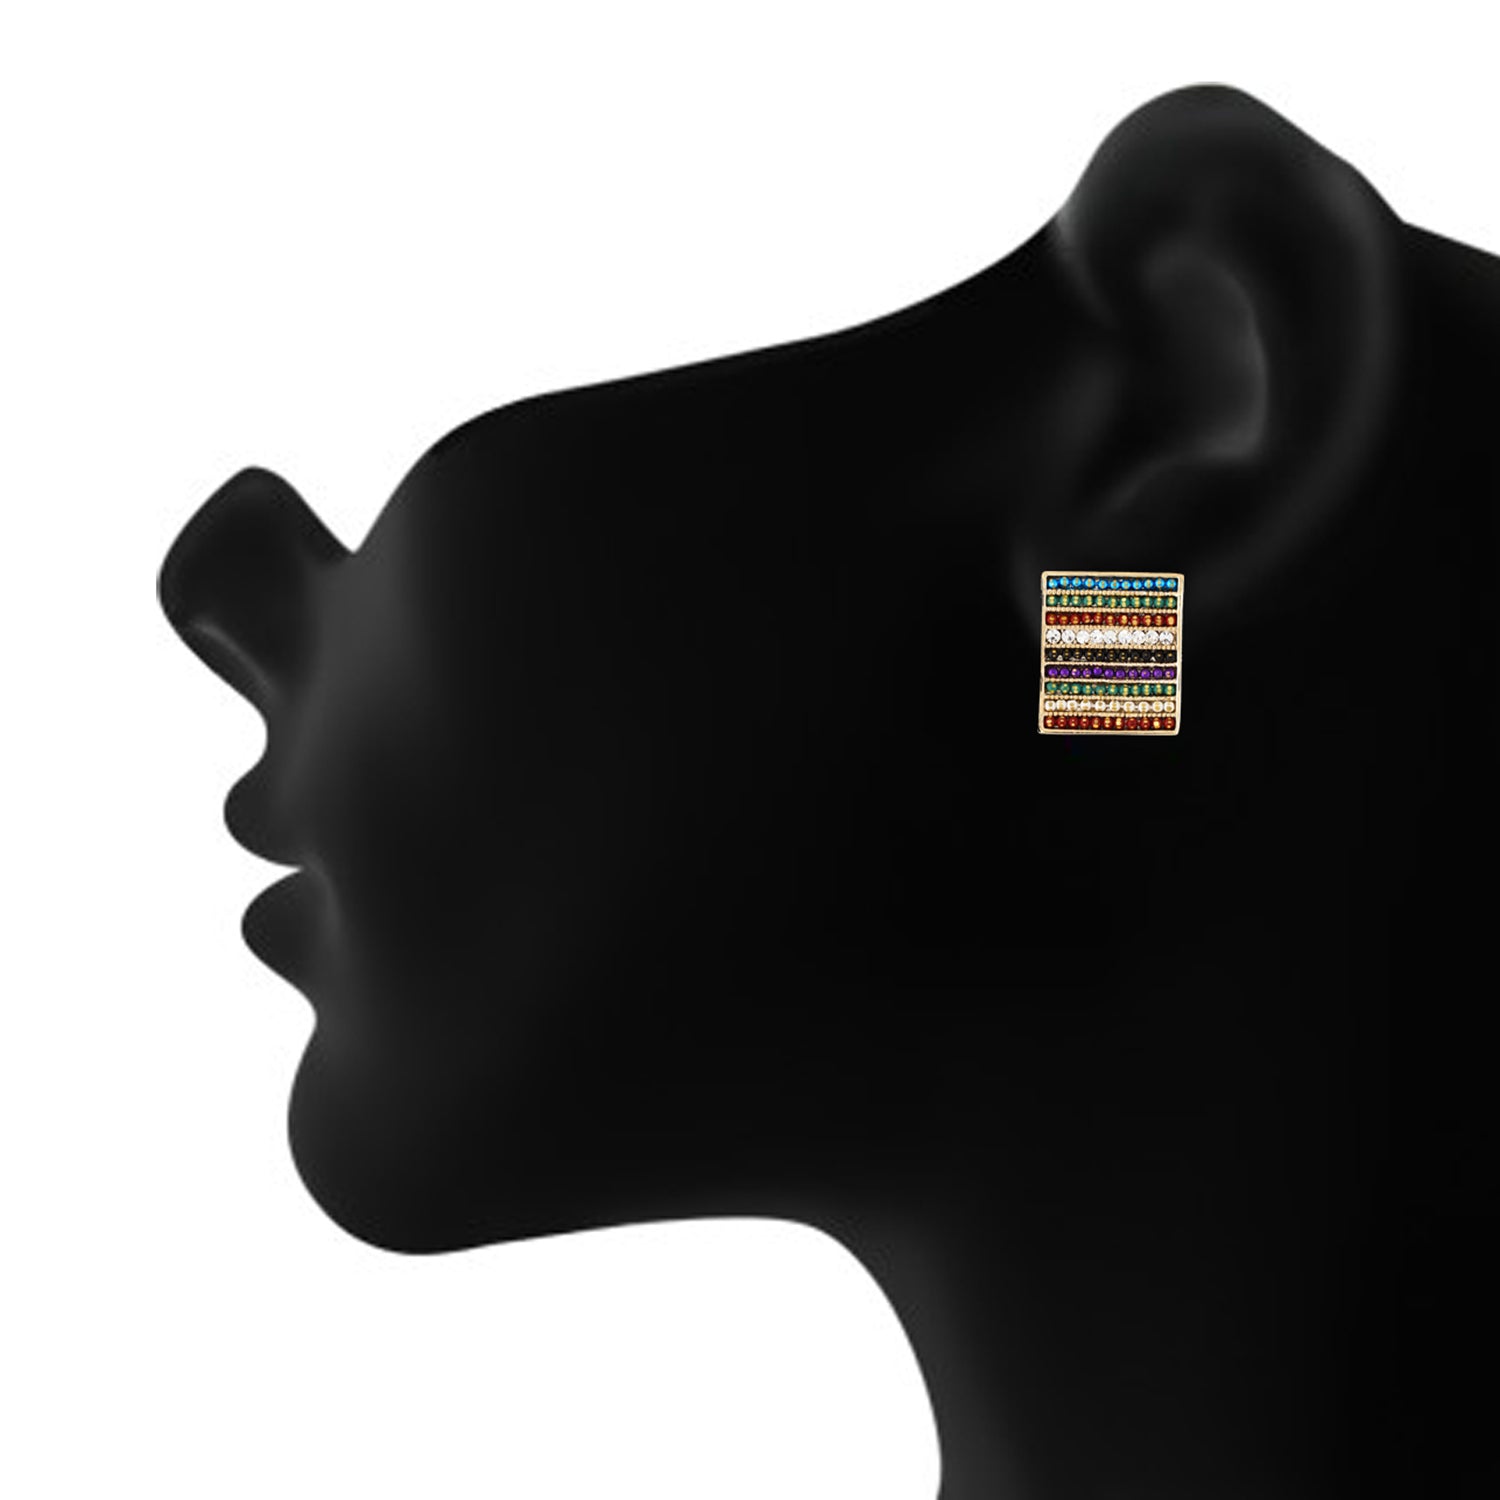 Wonderful Multi Colour Rectangular Shape Earring for Girls and Women